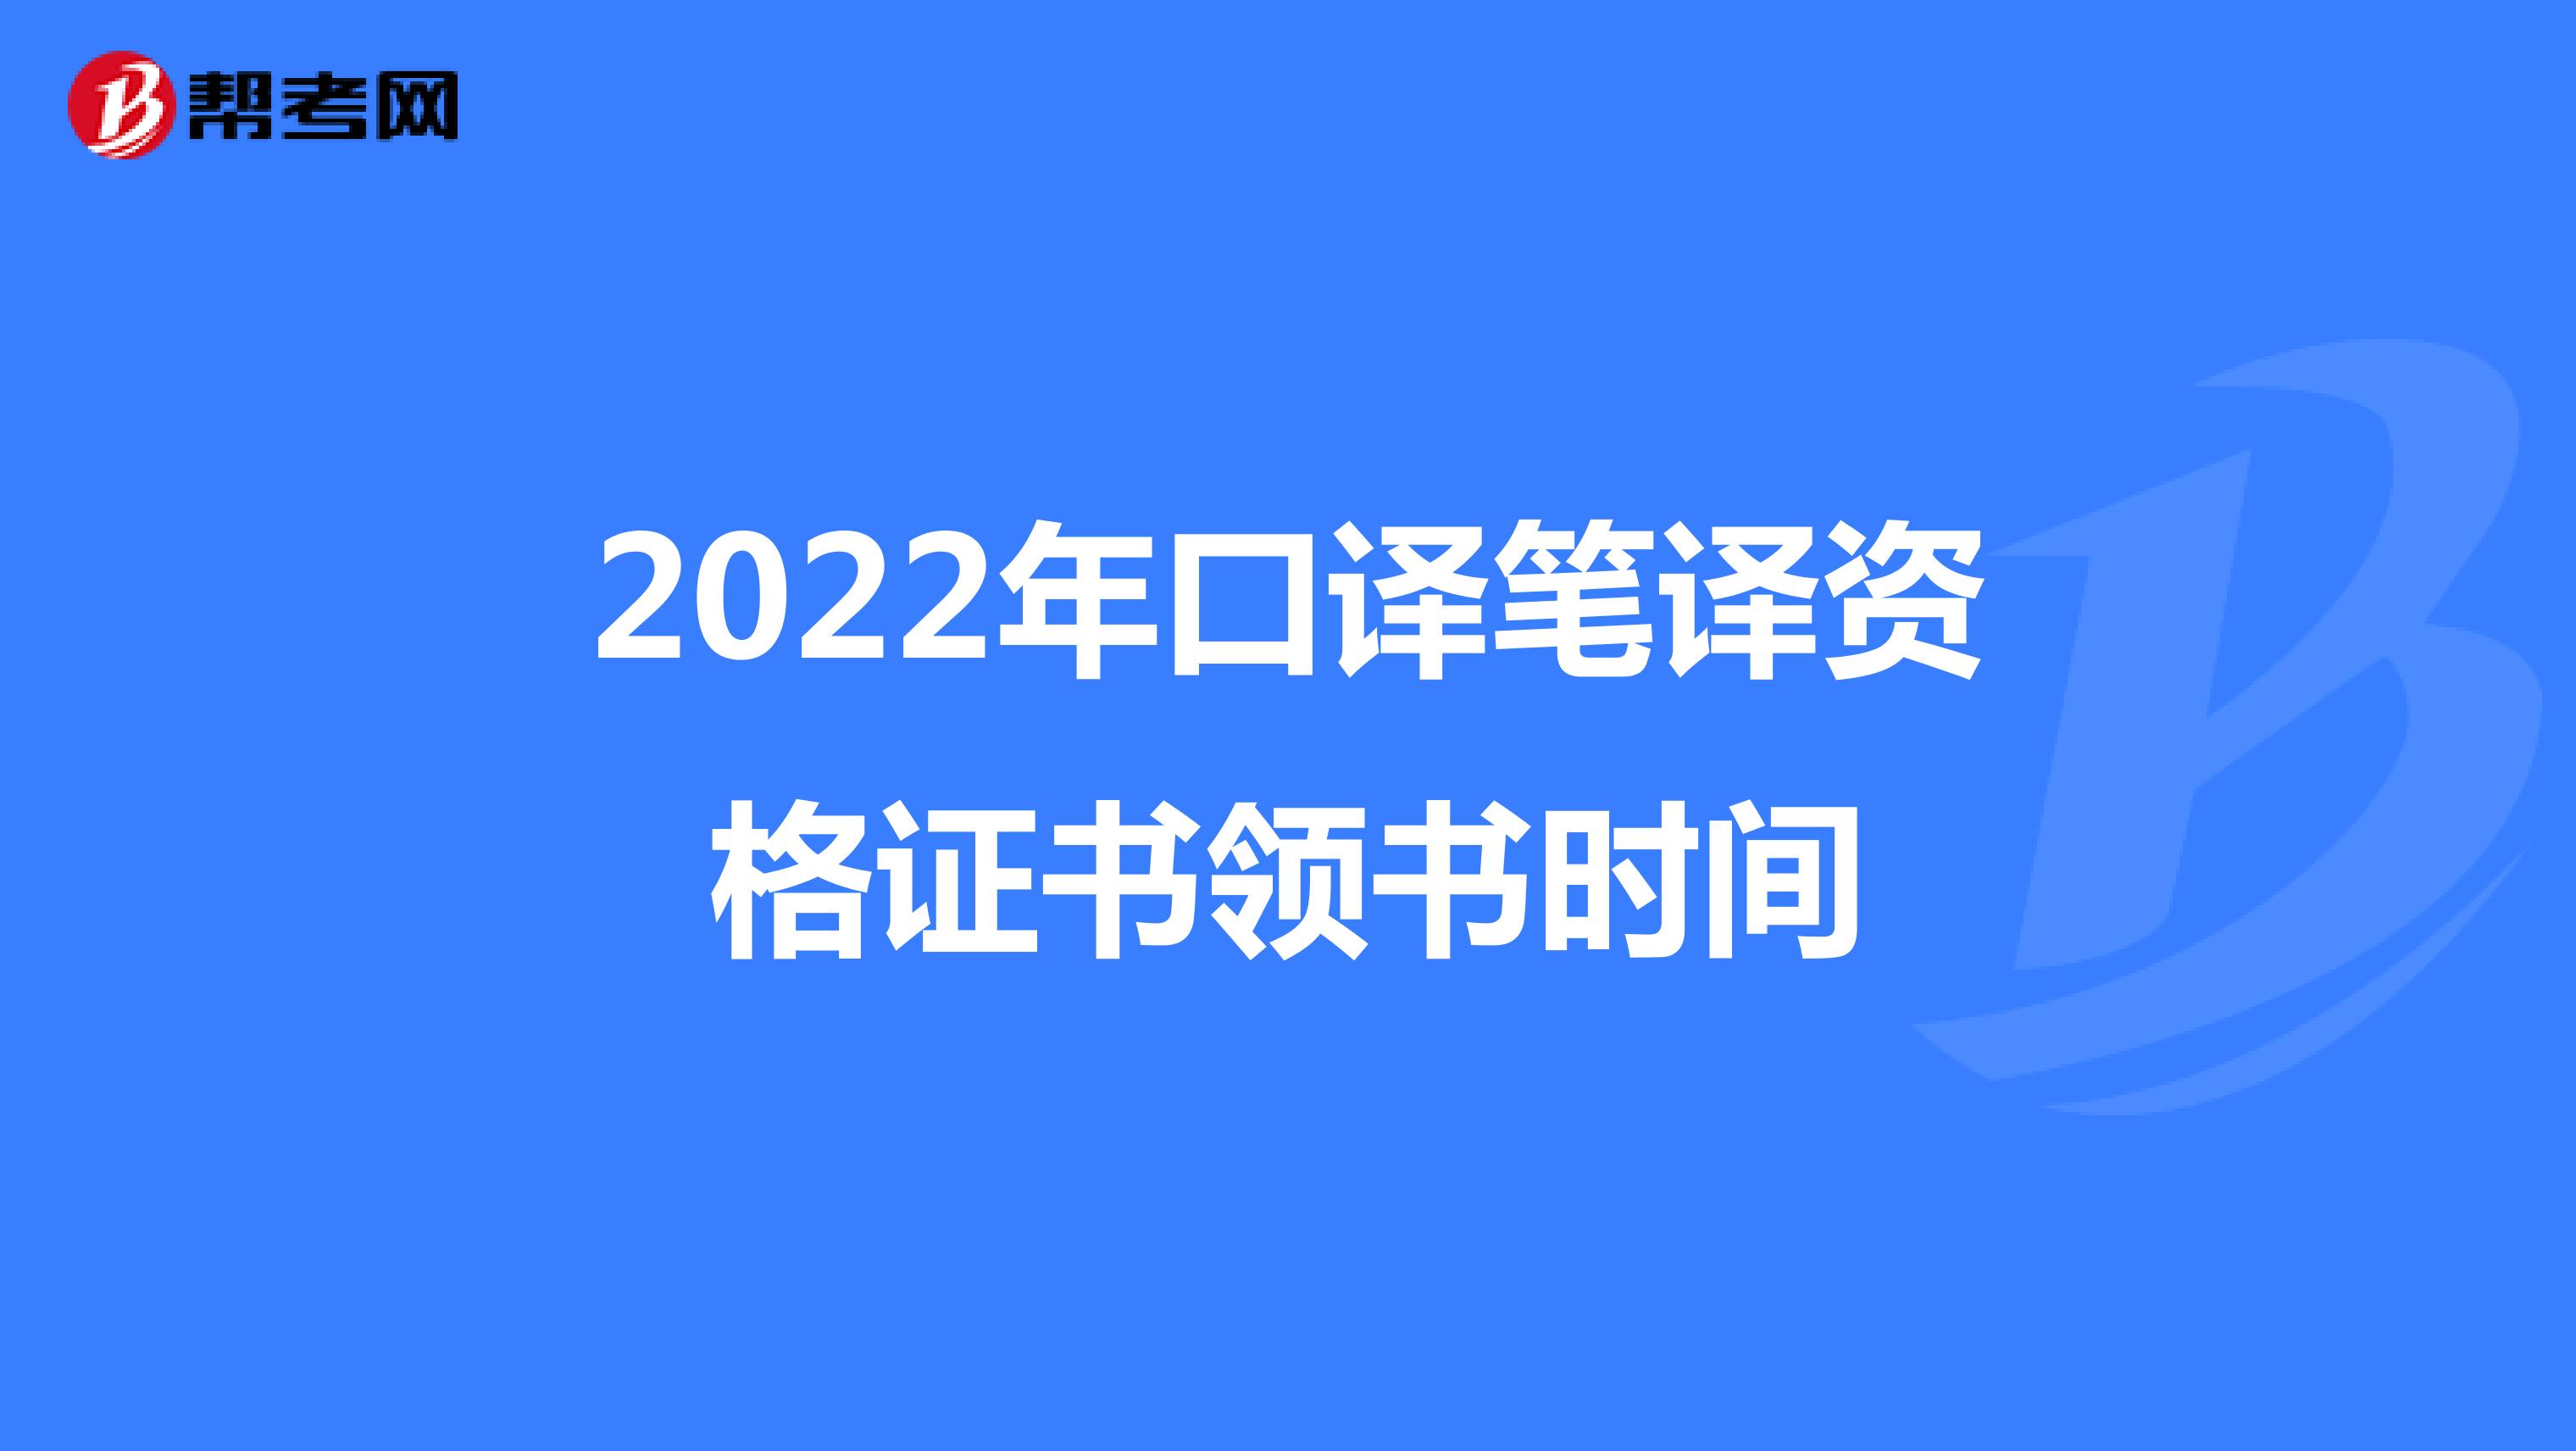 2022年口译笔译资格证书领书时间